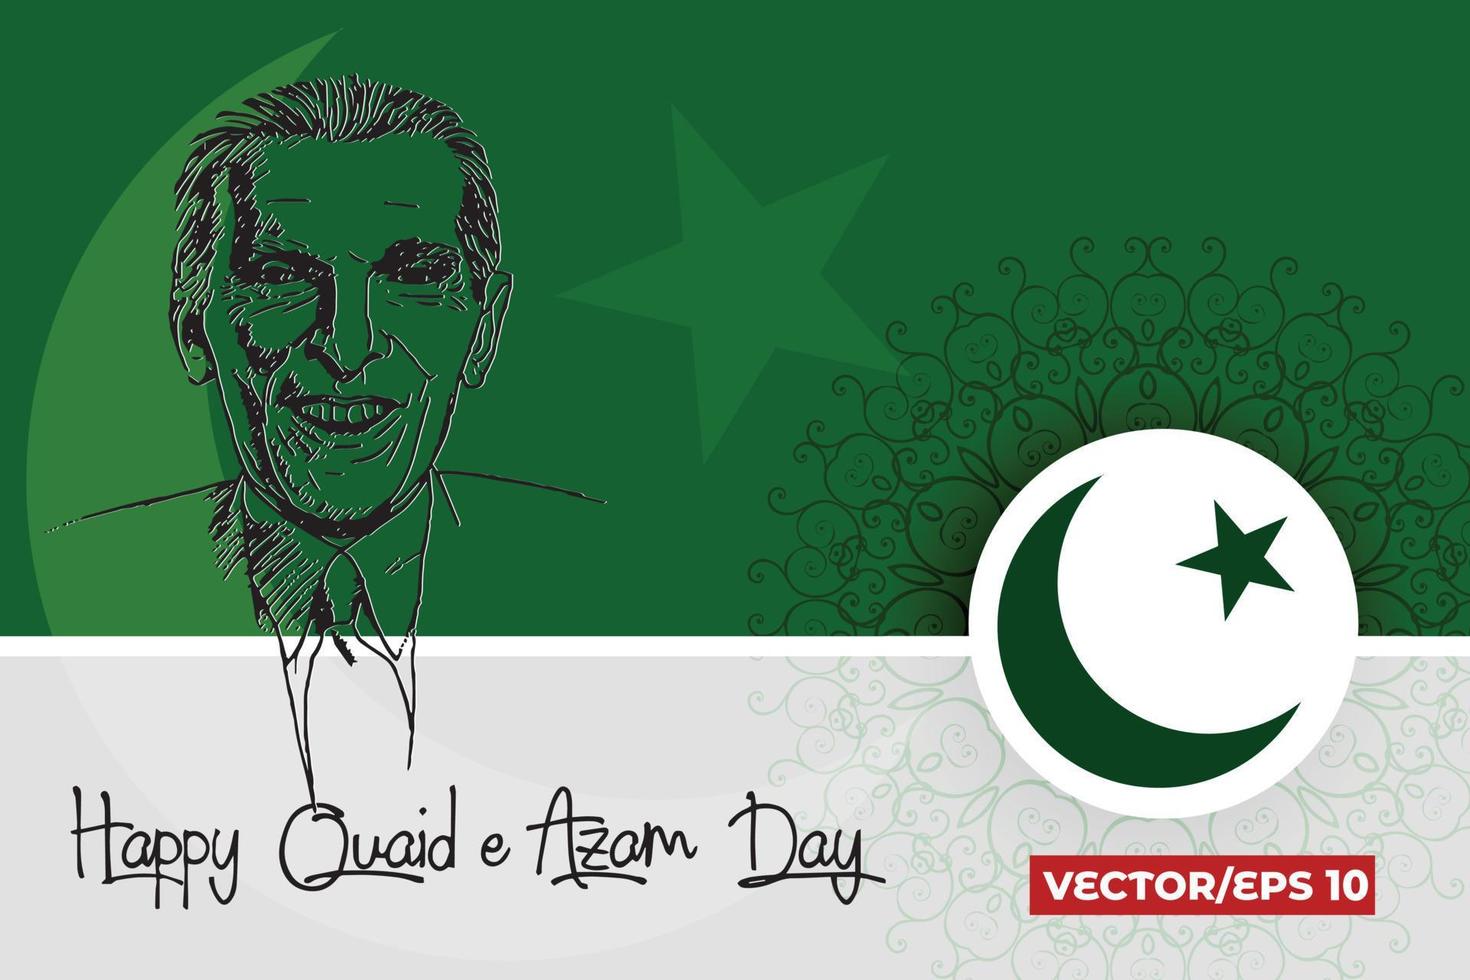 célébrer le jour quaid-e-azam 25 décembre, quad-e-azam mohammad ali jinnah aux salutations est décédé le 11 septembre 1948 vecteur